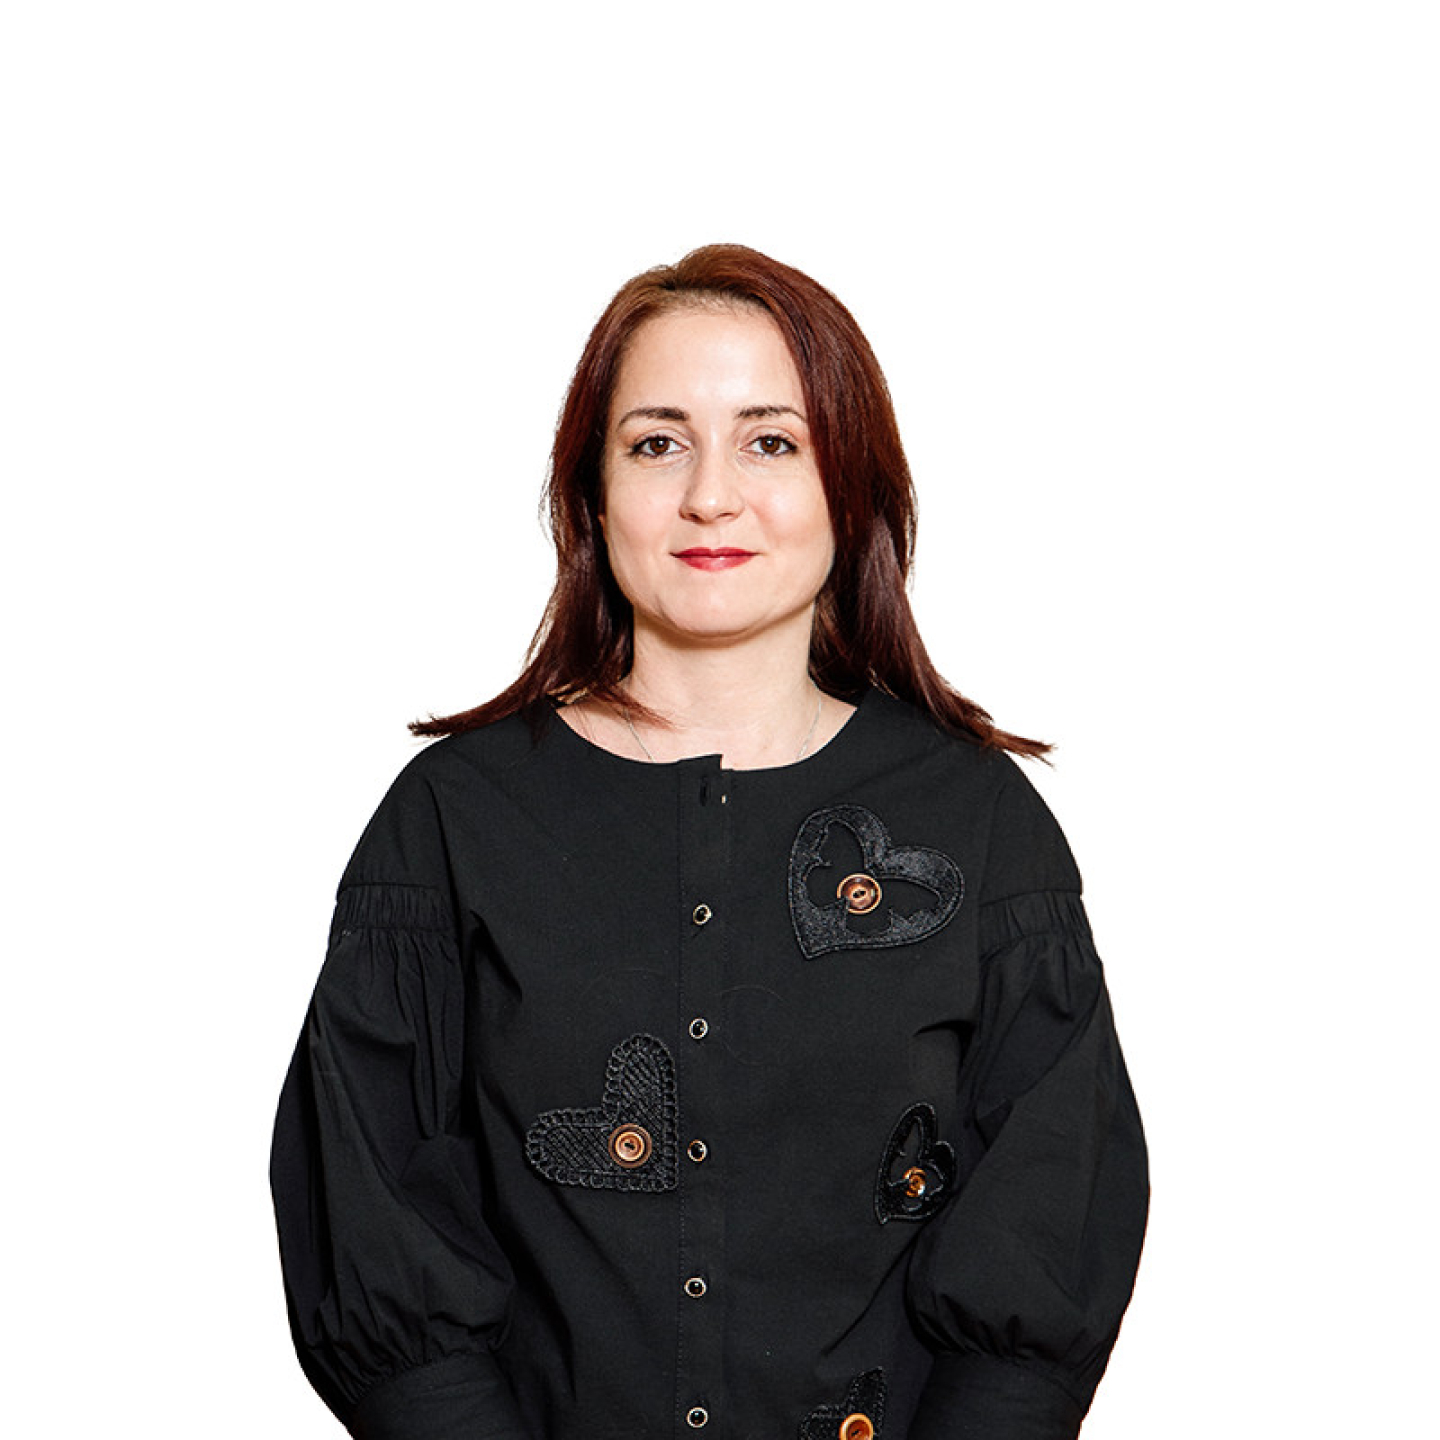 Dr. Jelena Gavrić